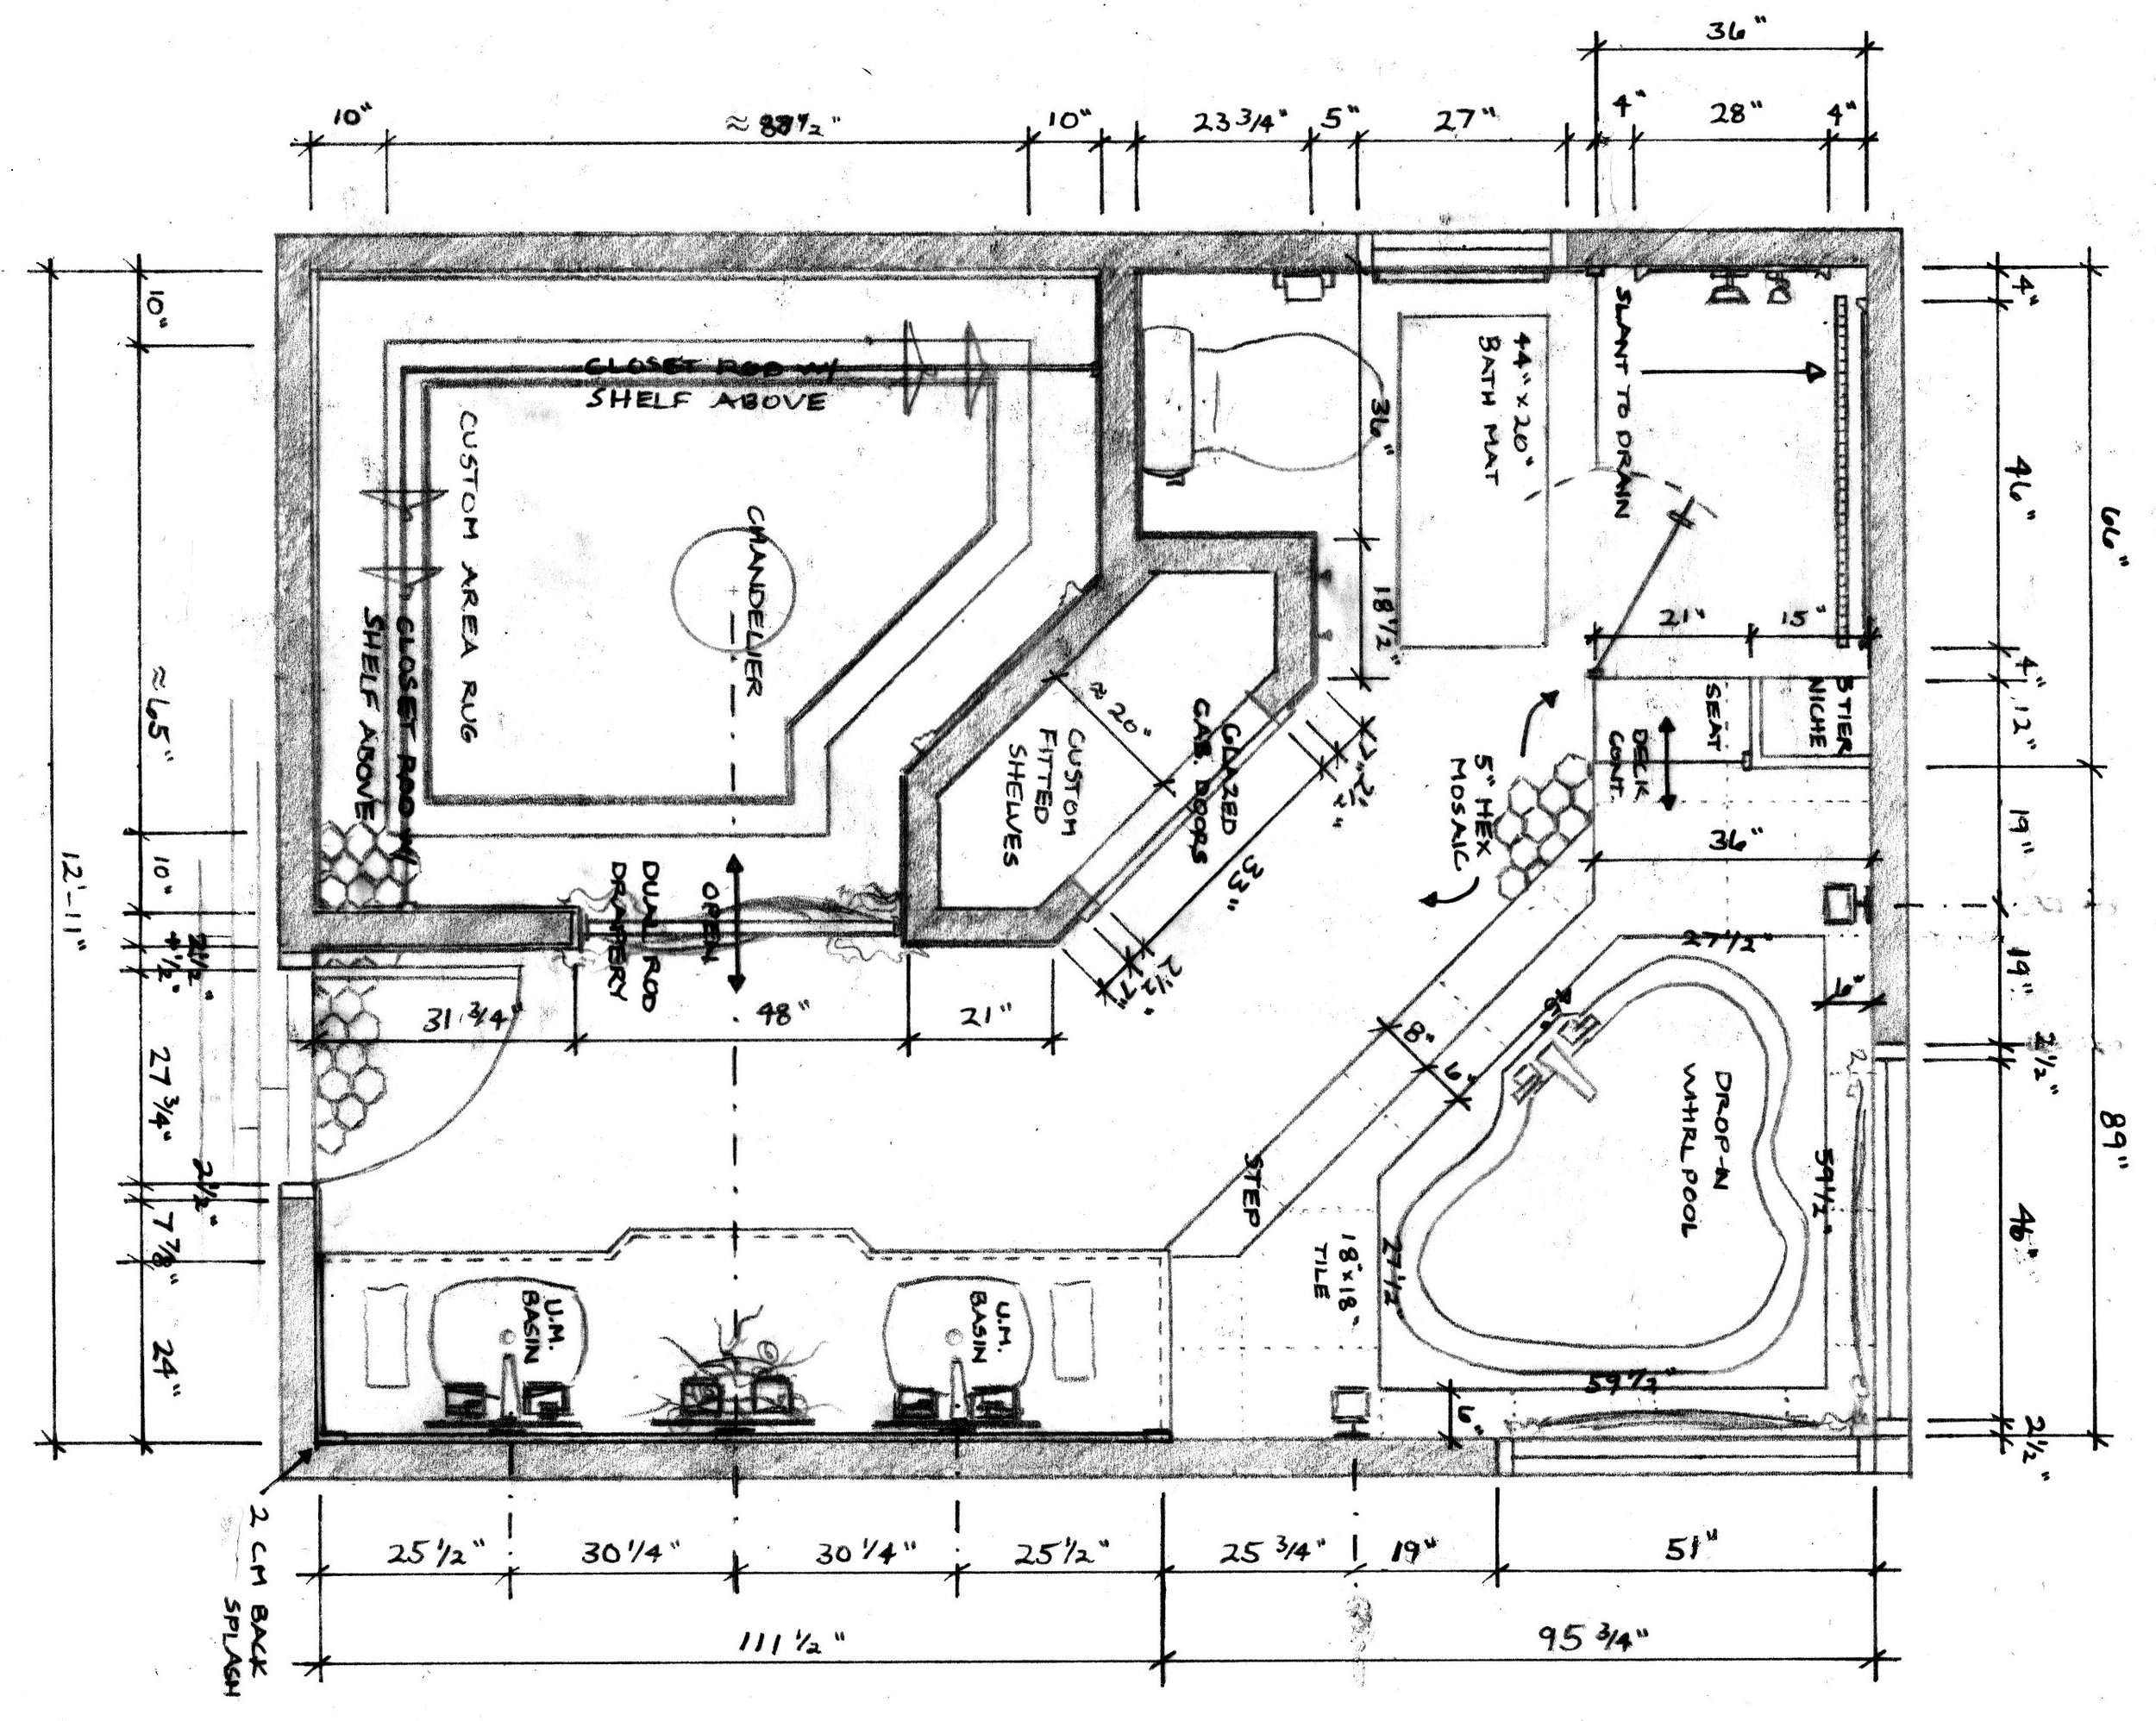 Crupi Notated Floor Plan.jpg